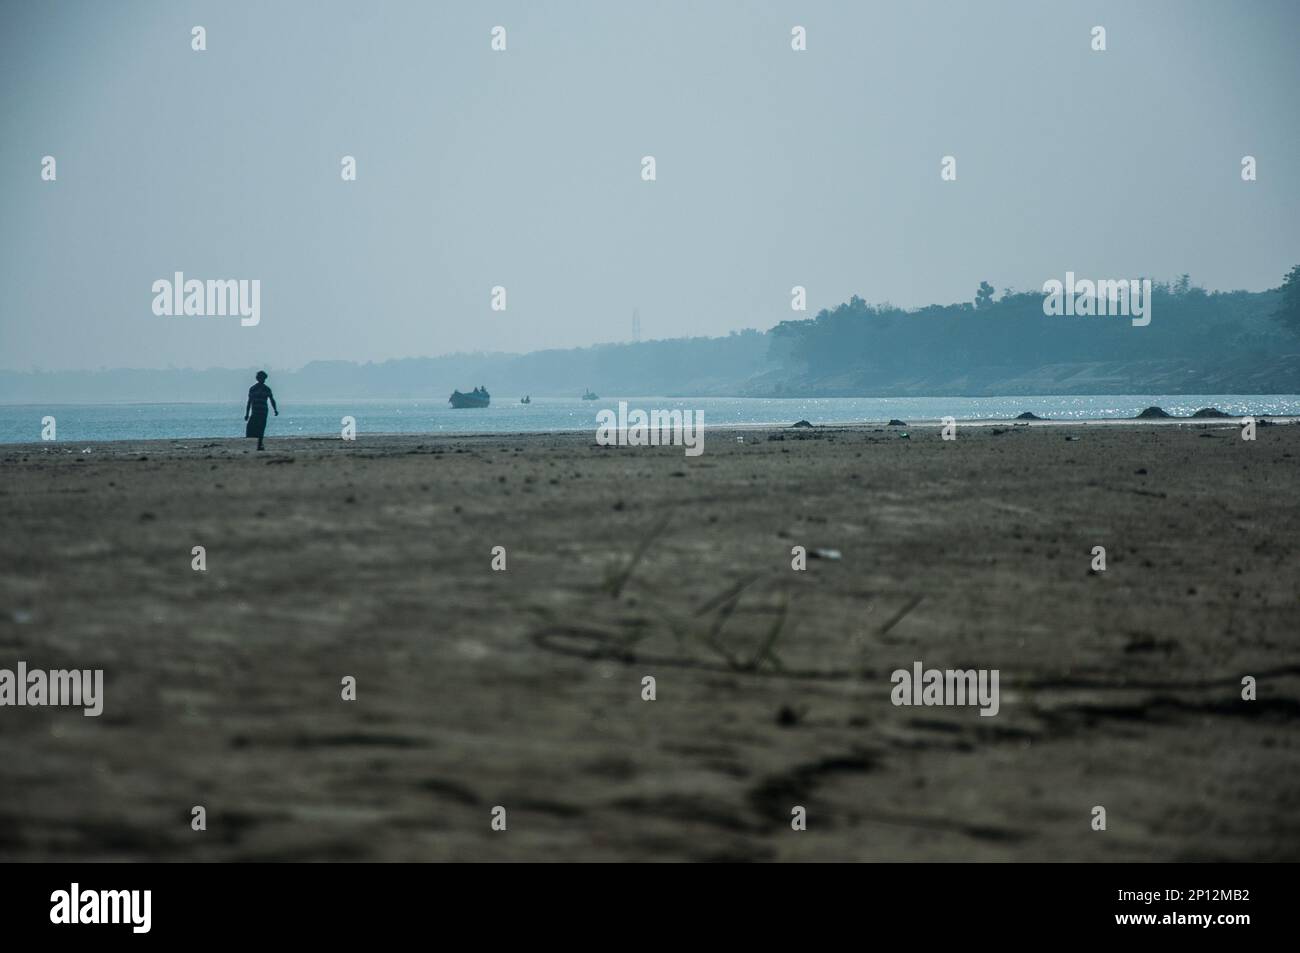 Bilder vom padma-Fluss in Bangladesch. Stockfoto